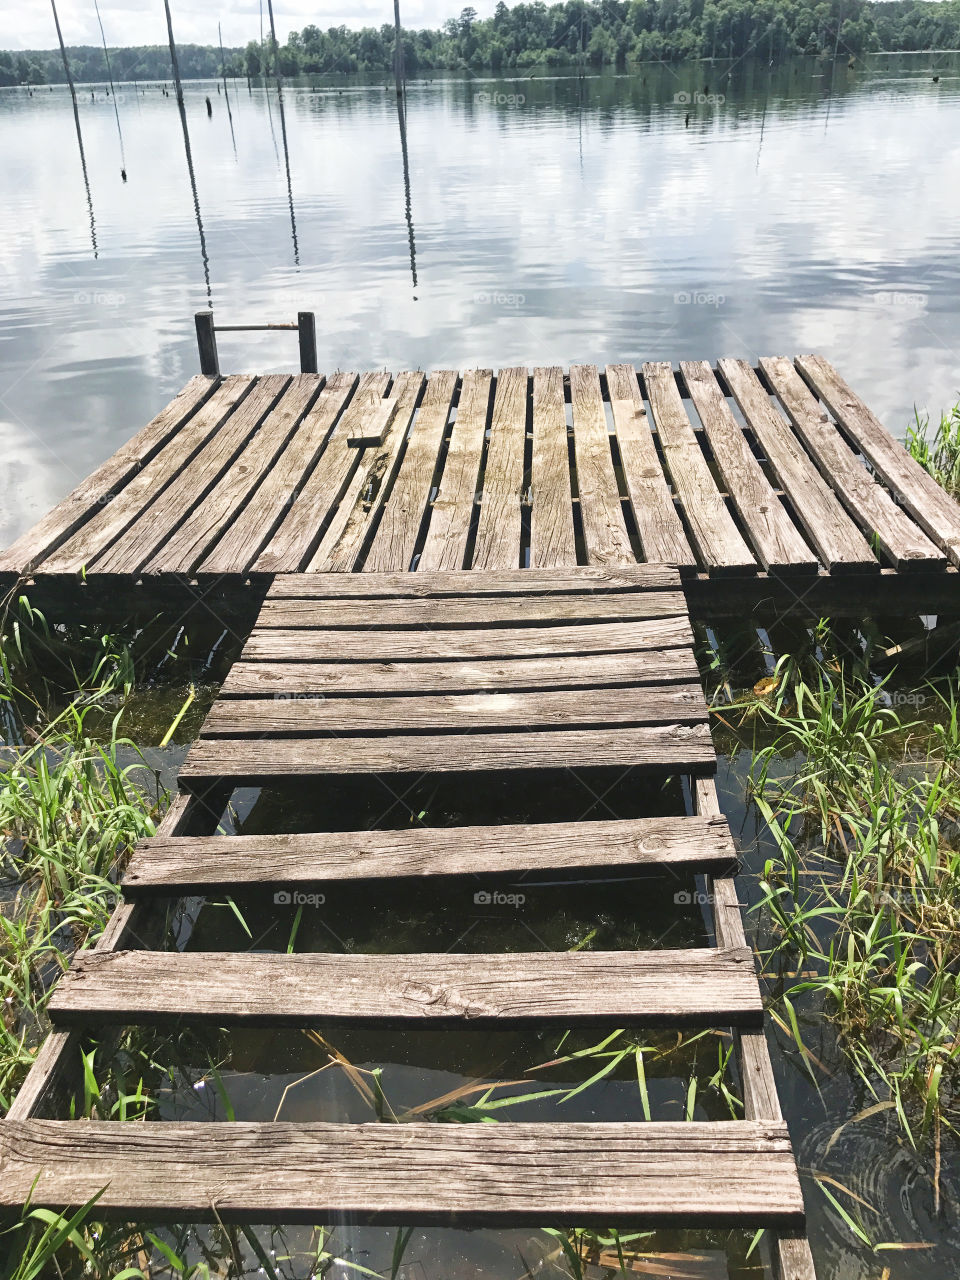 Kincaid lake dilapidated dock